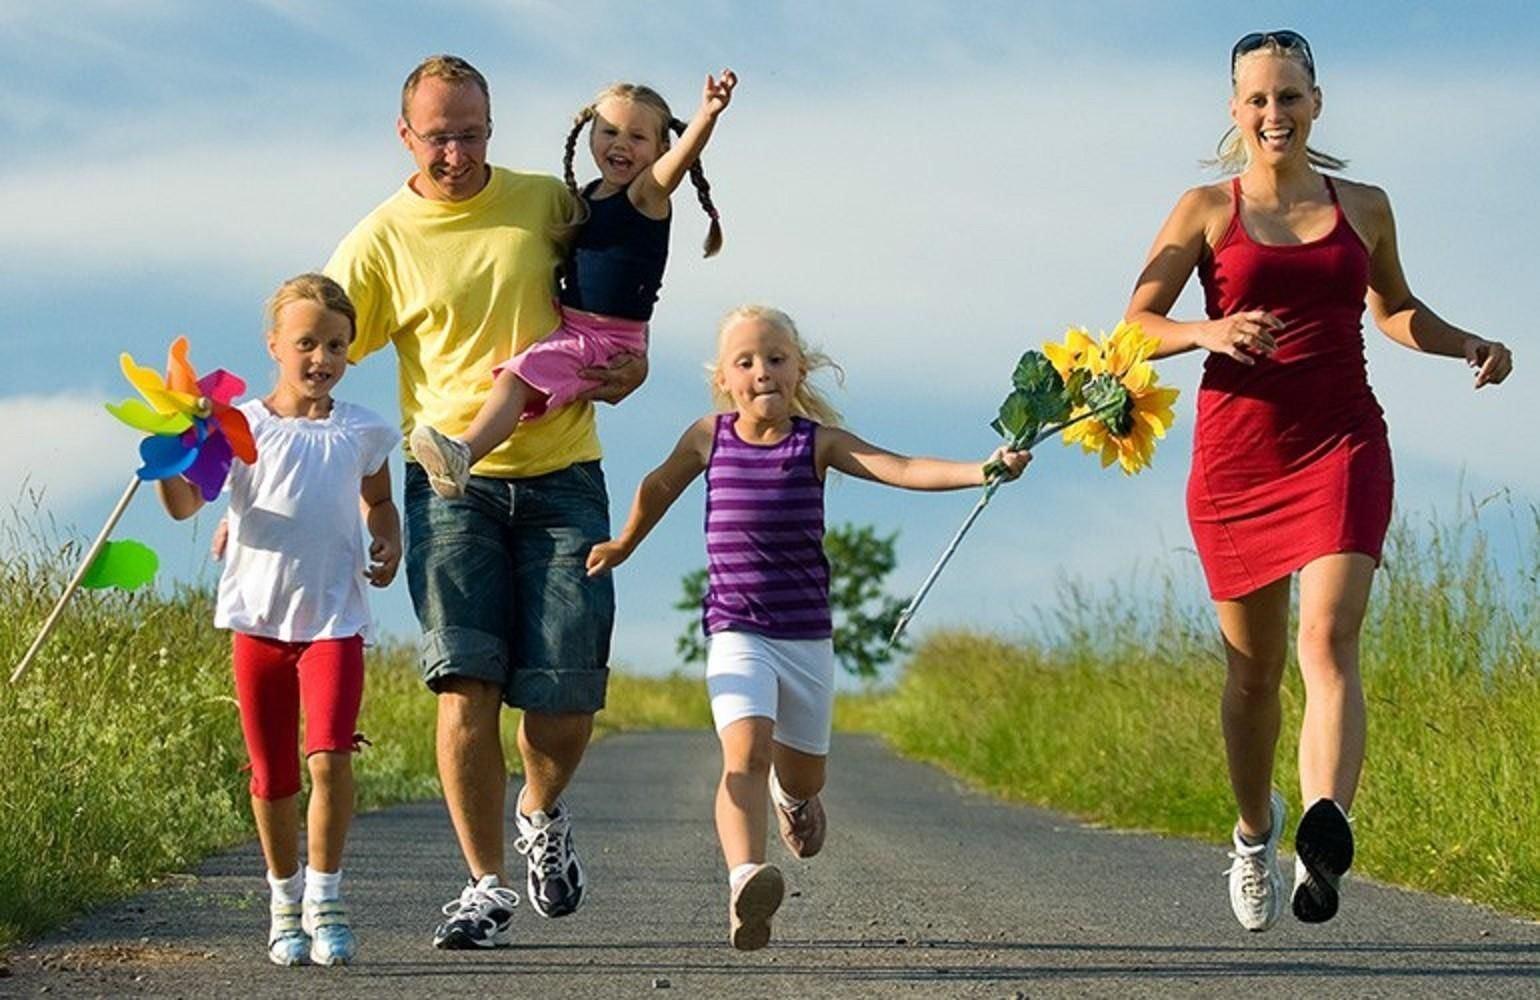 У растений активный образ жизни или нет. Здоровый образ жизни. Спортивная семья. Активный и здоровый образ жизни. Спортивная семья с детьми.